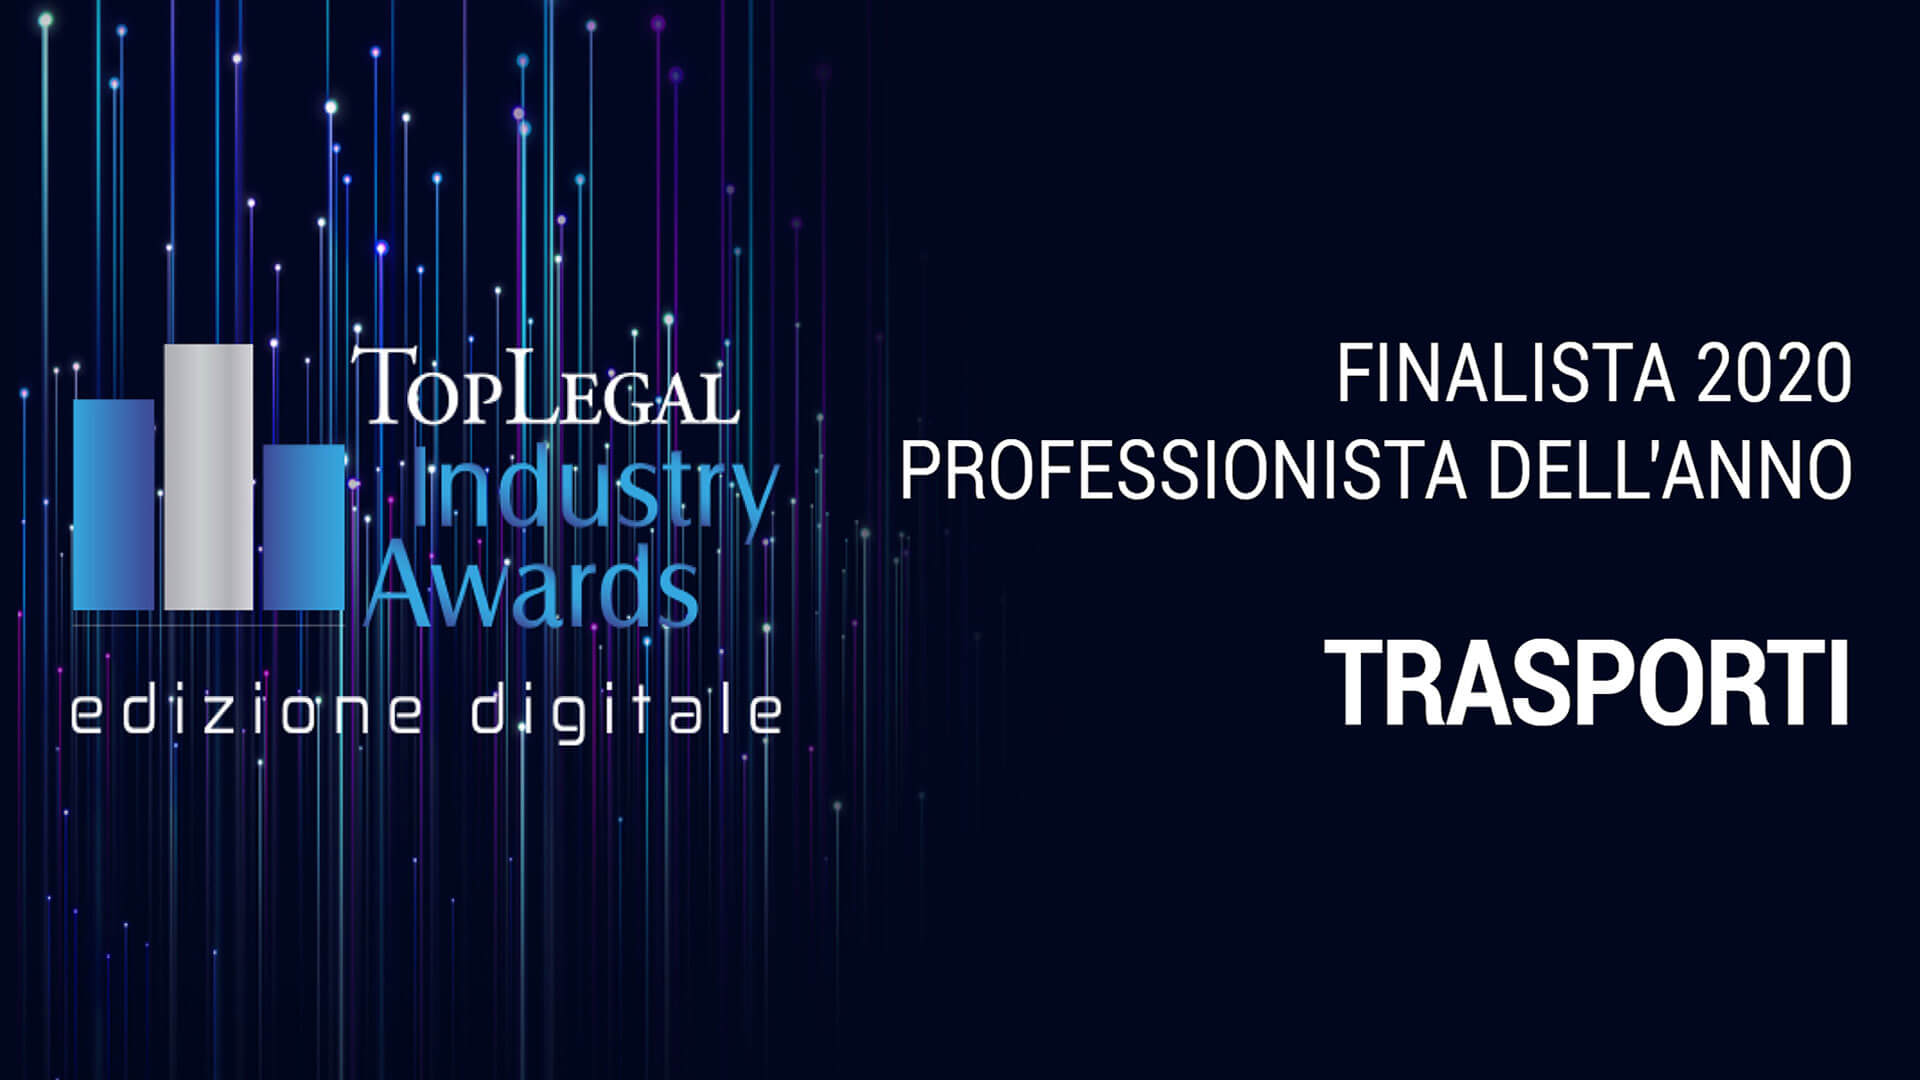 Top-Legal-Industry-Award-2020-finalista-2020-professionista-dell-anno-2020-settore-trasporti-Grimaldi-Studio-Legale